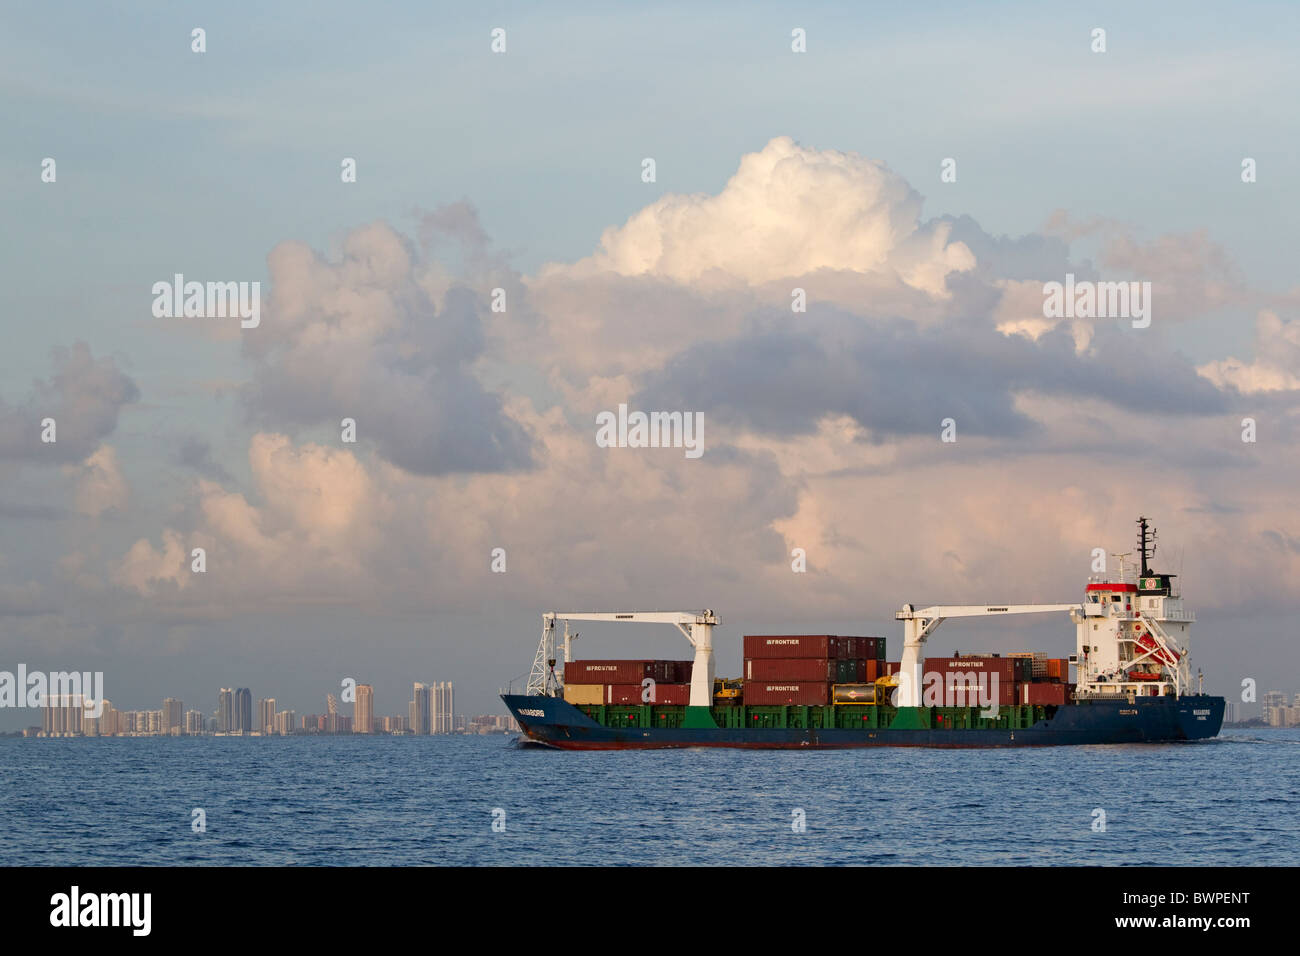 La carga de los buques en el mar cerca de la ciudad de Daytona, Florida Foto de stock